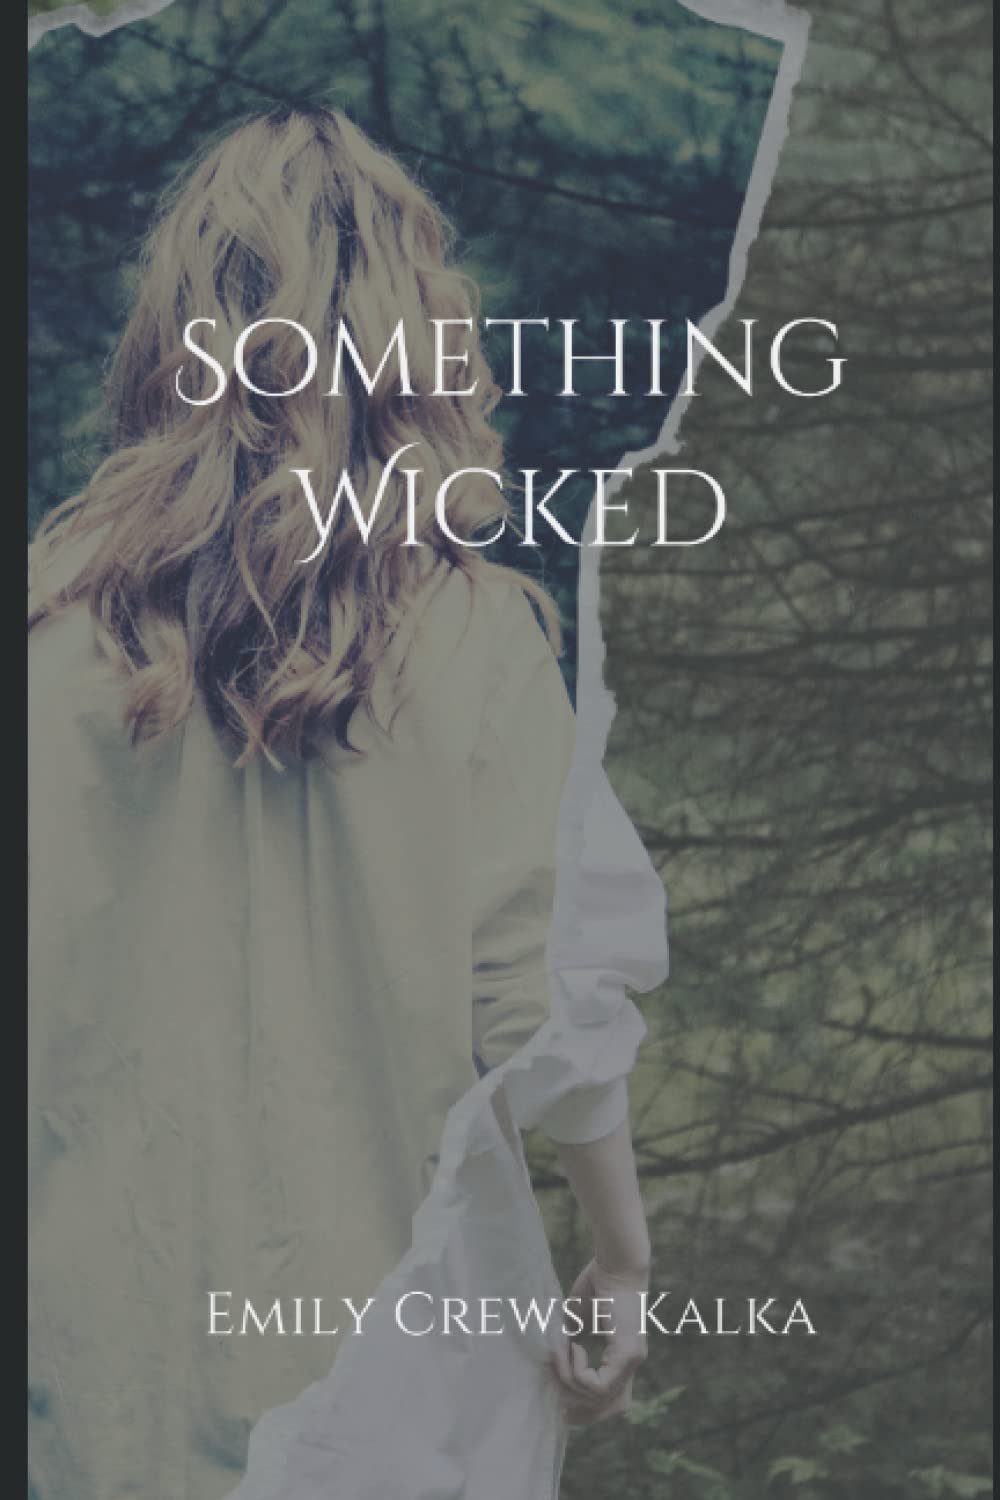 "Something Wicked" by Emily Crtewse Kalka